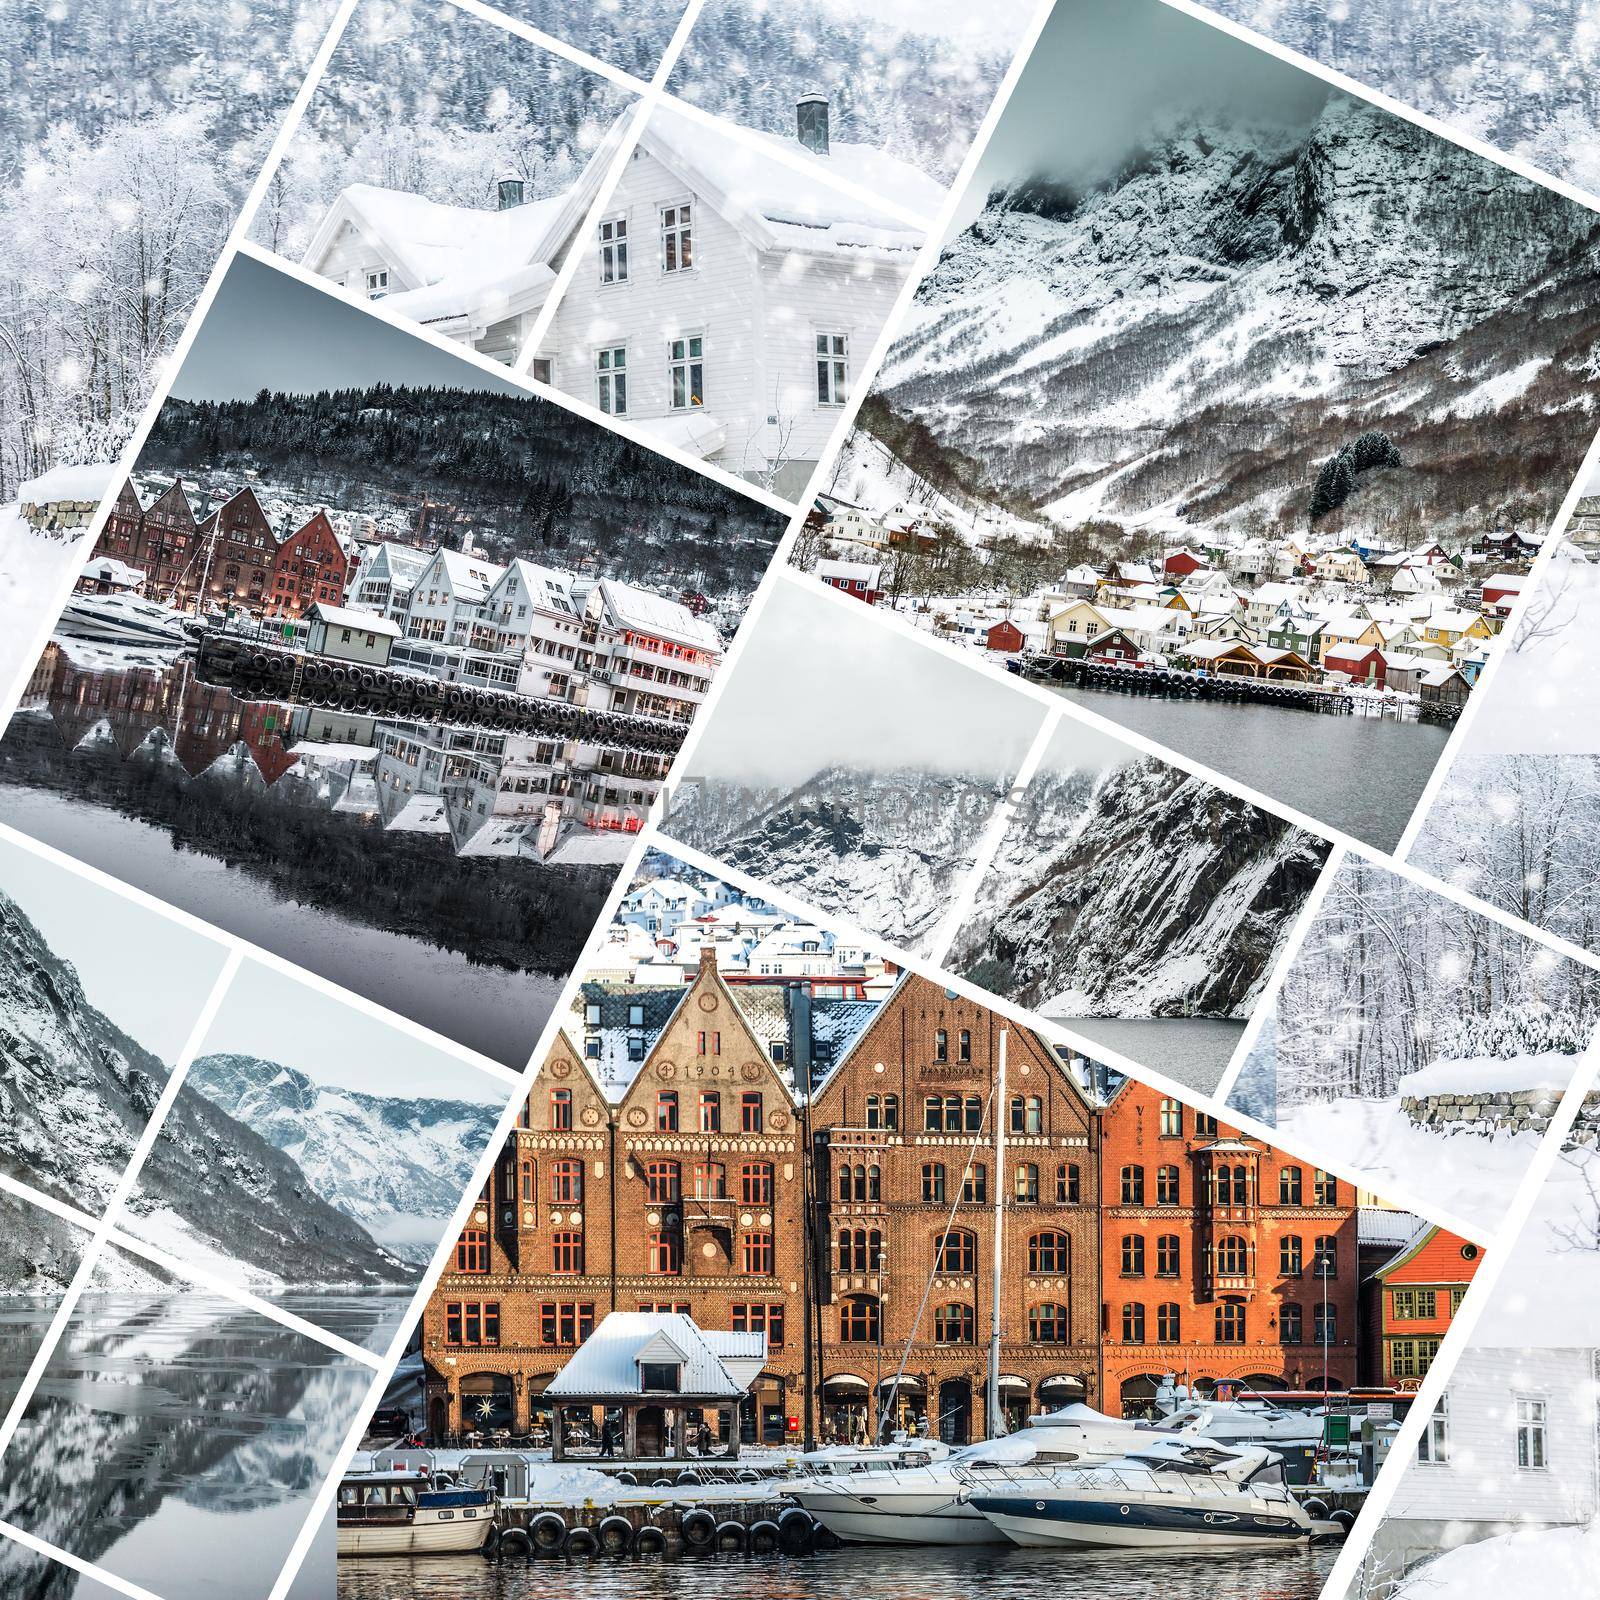 photos from Bergen by tan4ikk1